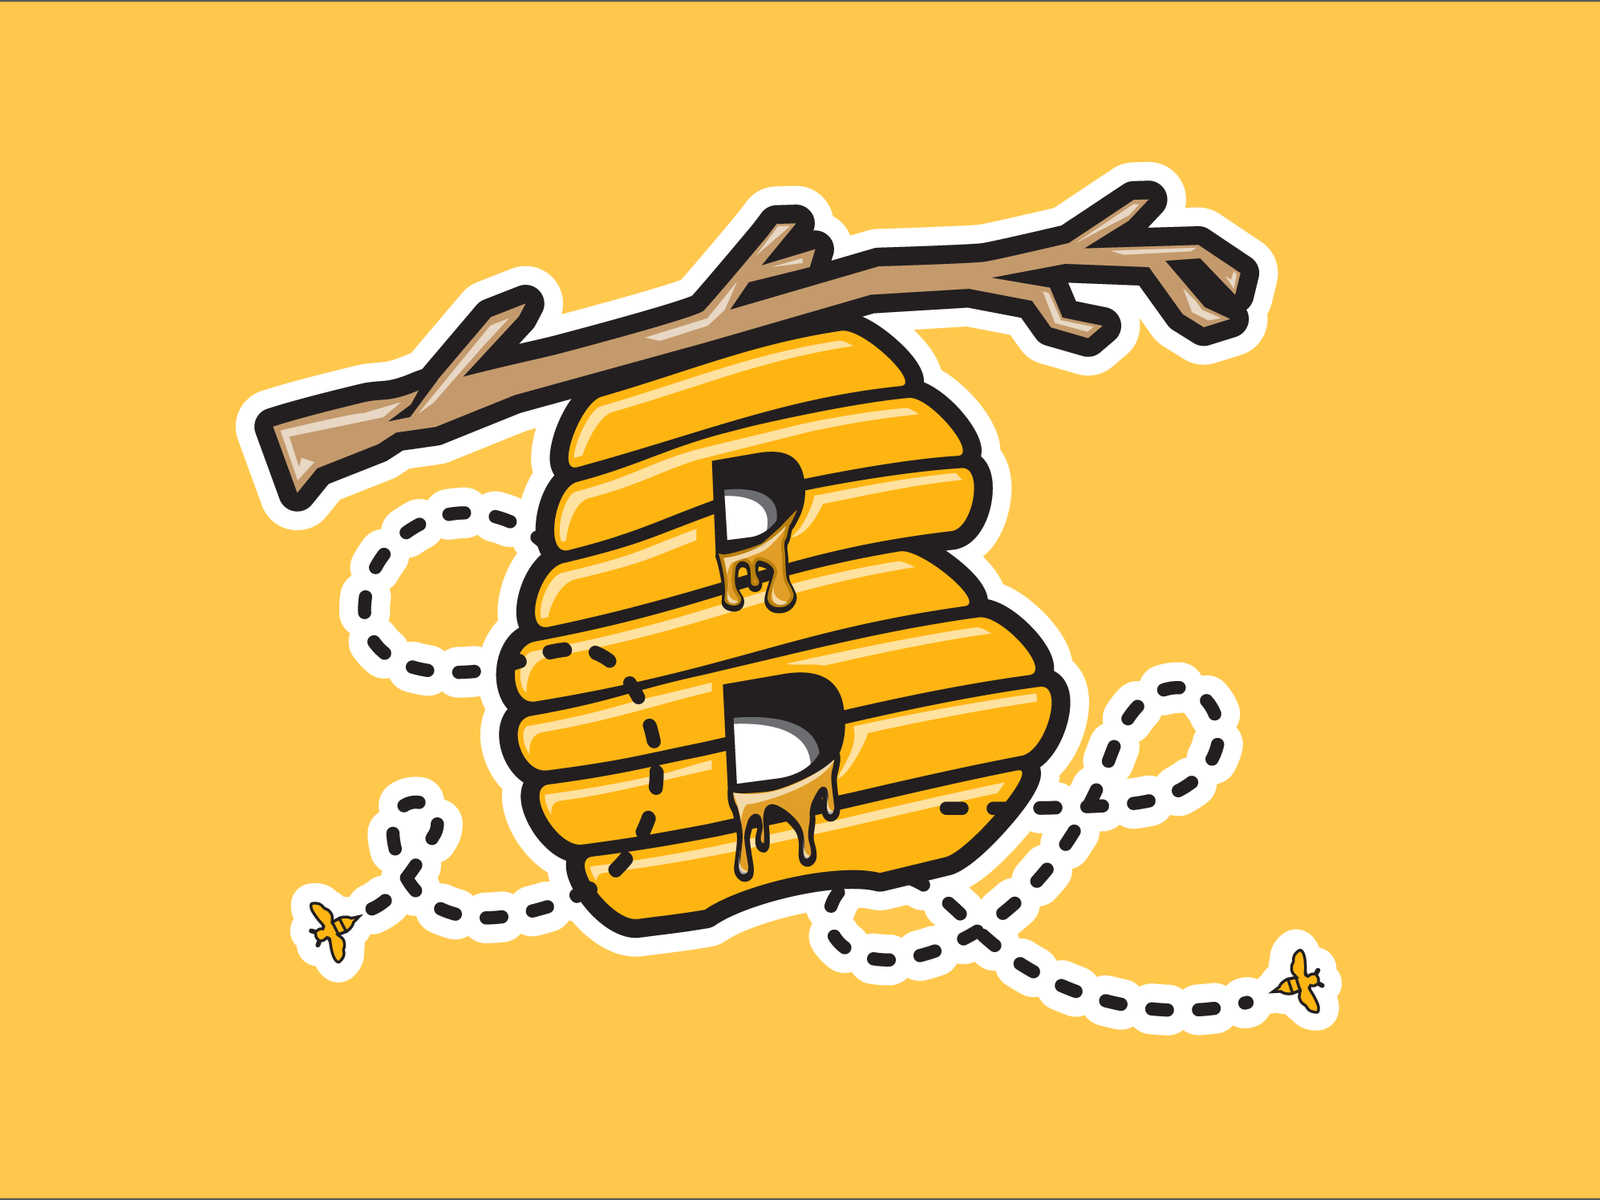 Bees Unveil New Abejas de Salt Lake Logos